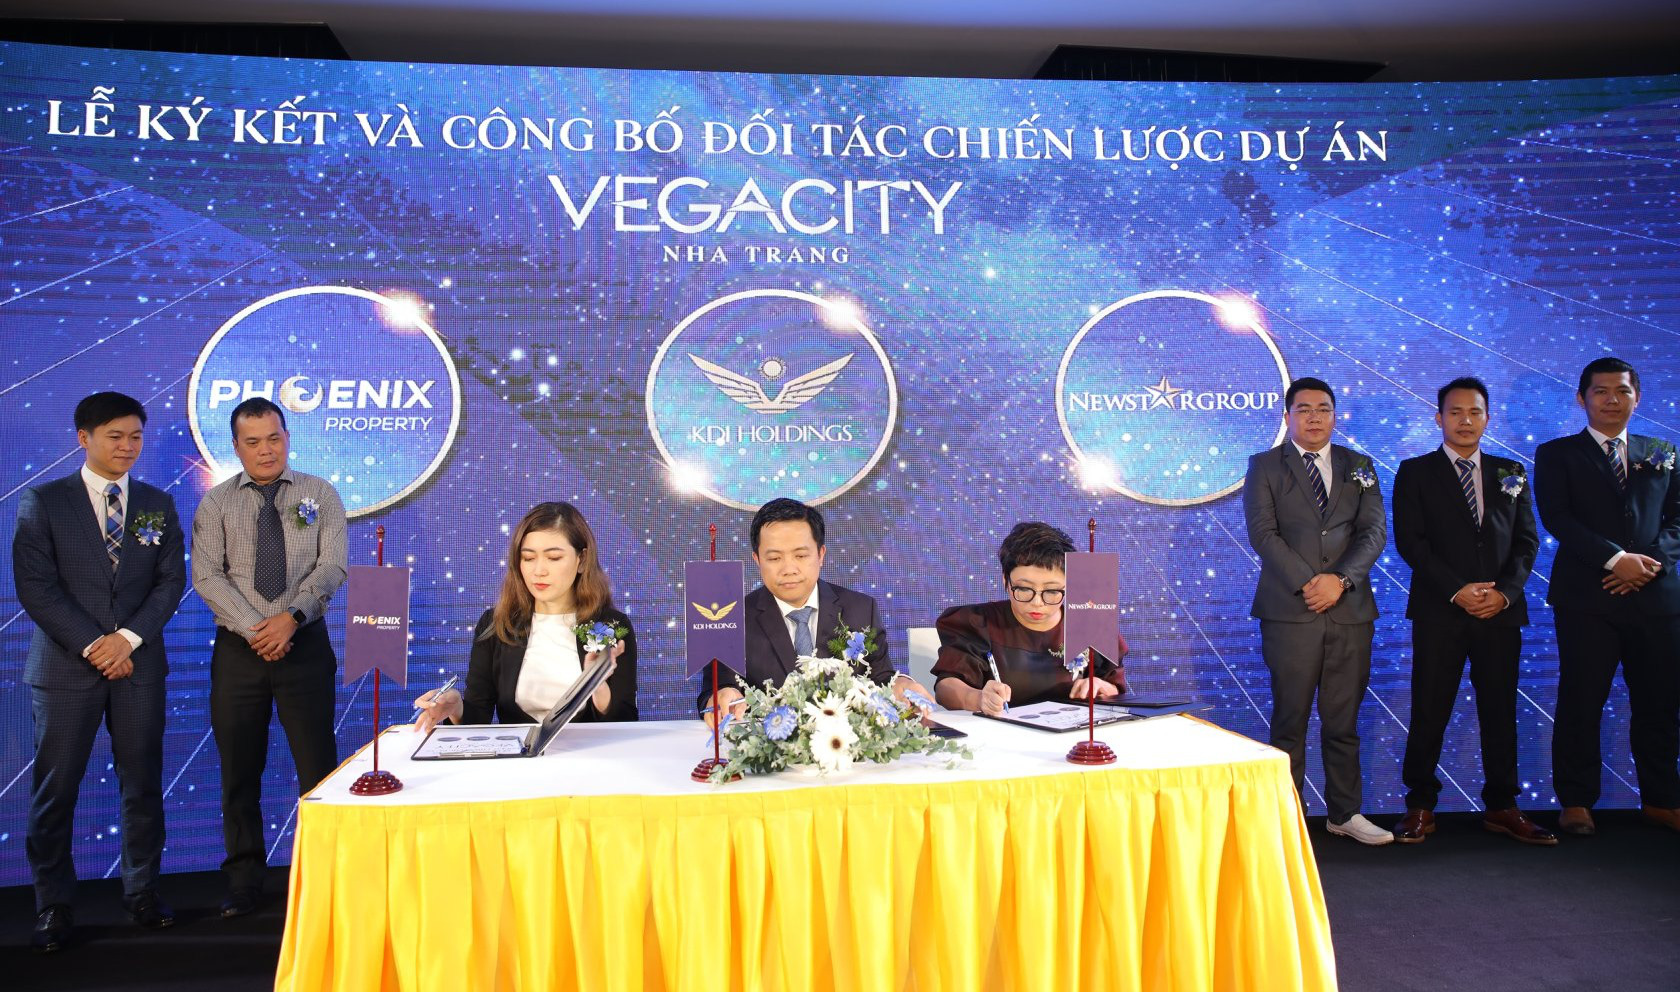 Tổng đại lý phân phối Vega City - NewstarGroup